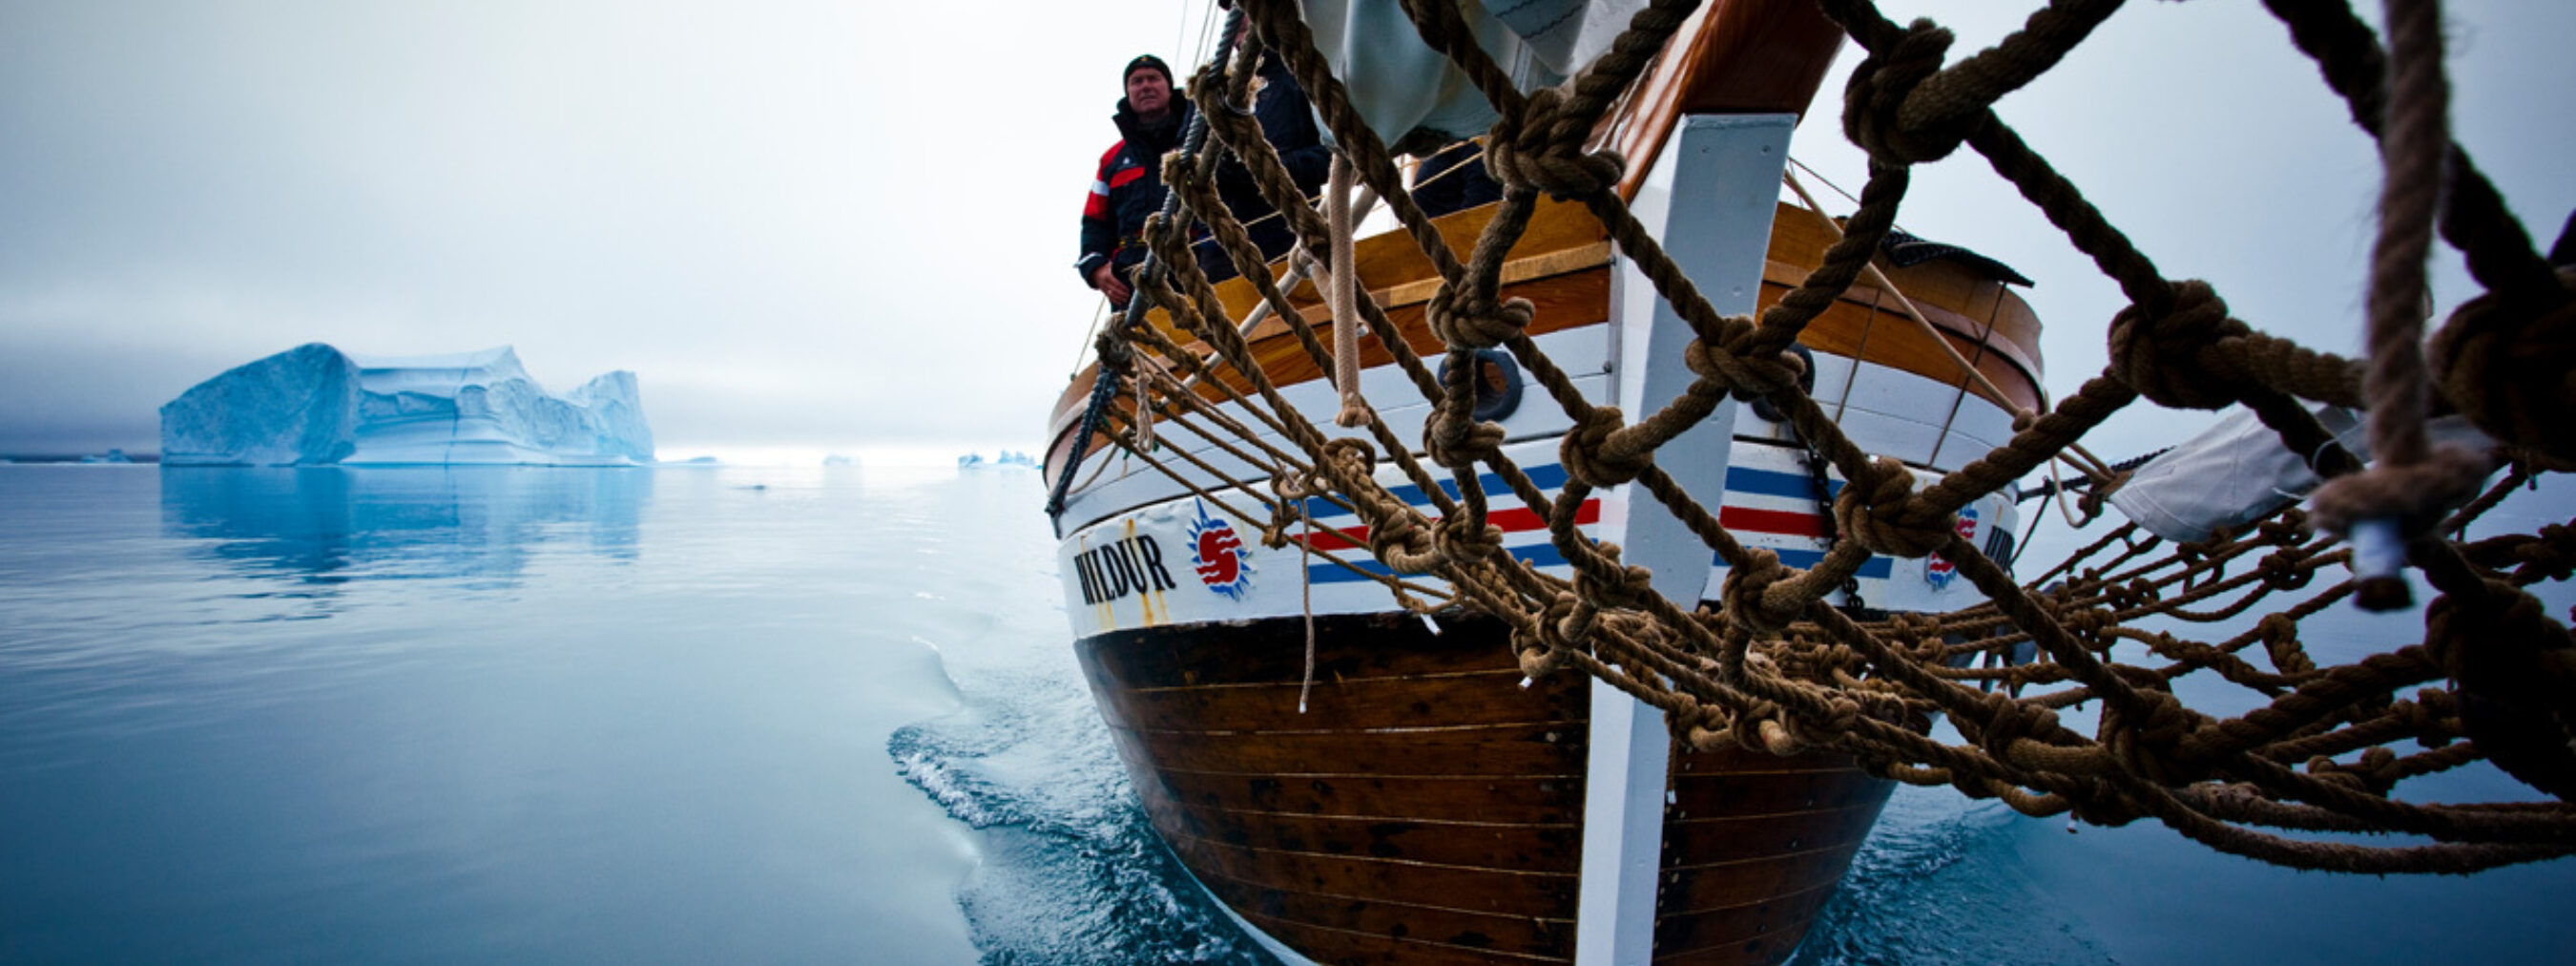 Segeltour Ostgrönland;
Segelschiff von vorne unten abgebildet. Im Hintergrund Eisberge